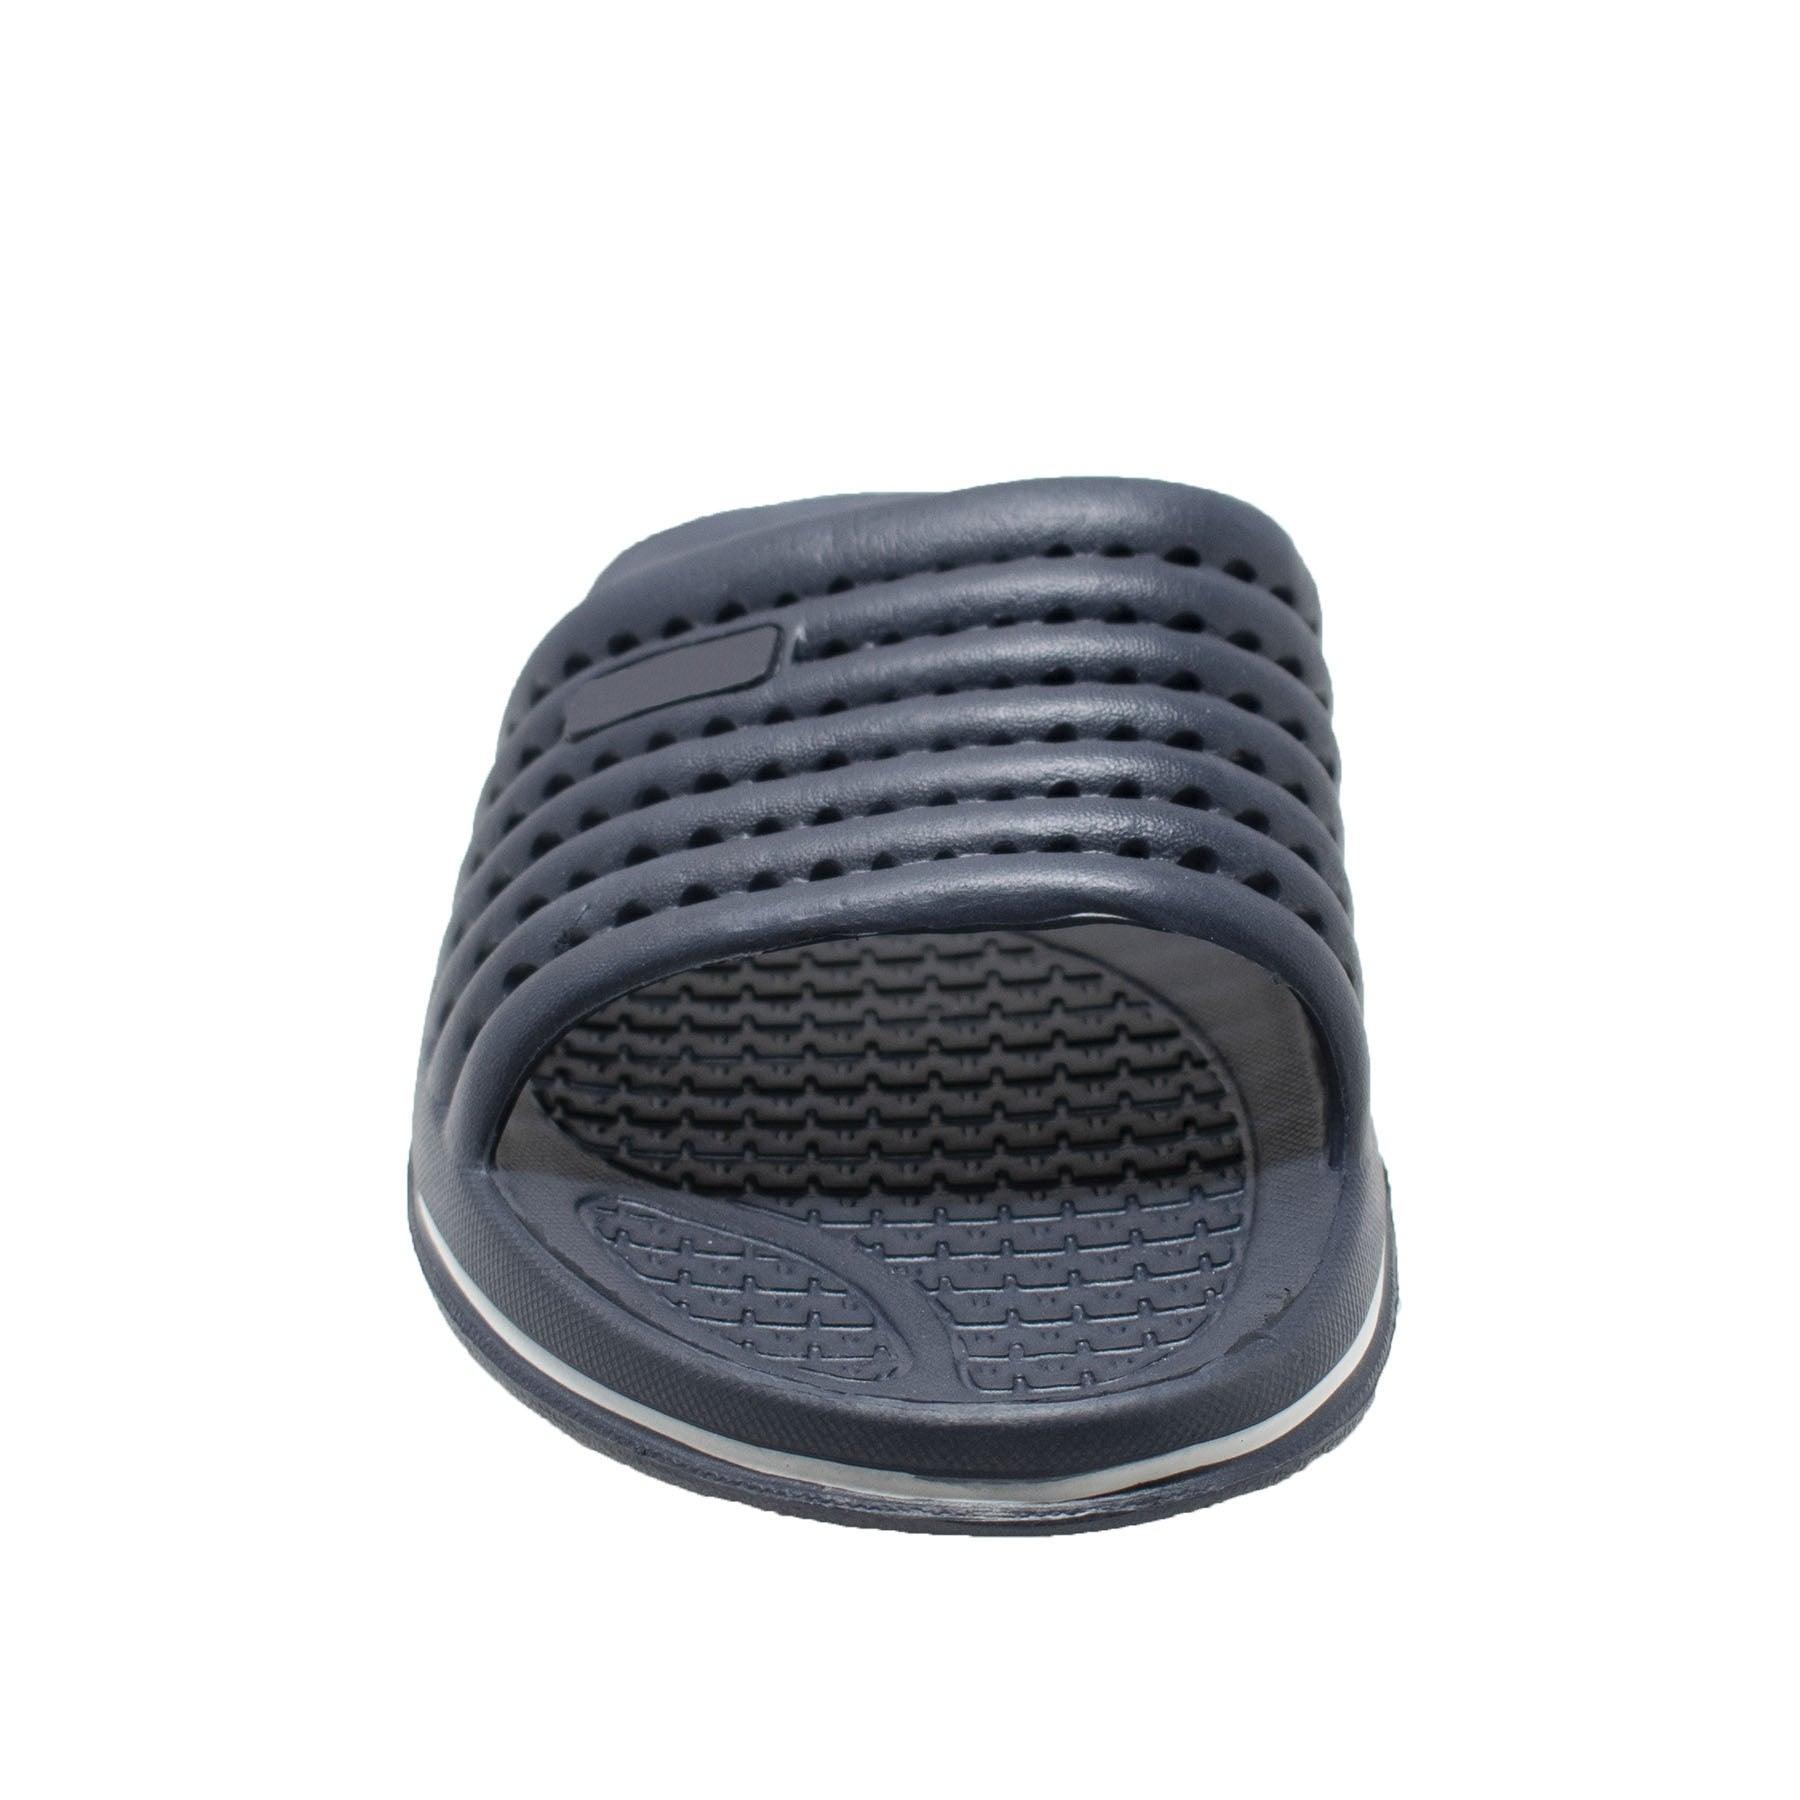 Tecs Men's EVA Comfort Slip On Sandal Navy Blue - Flyclothing LLC